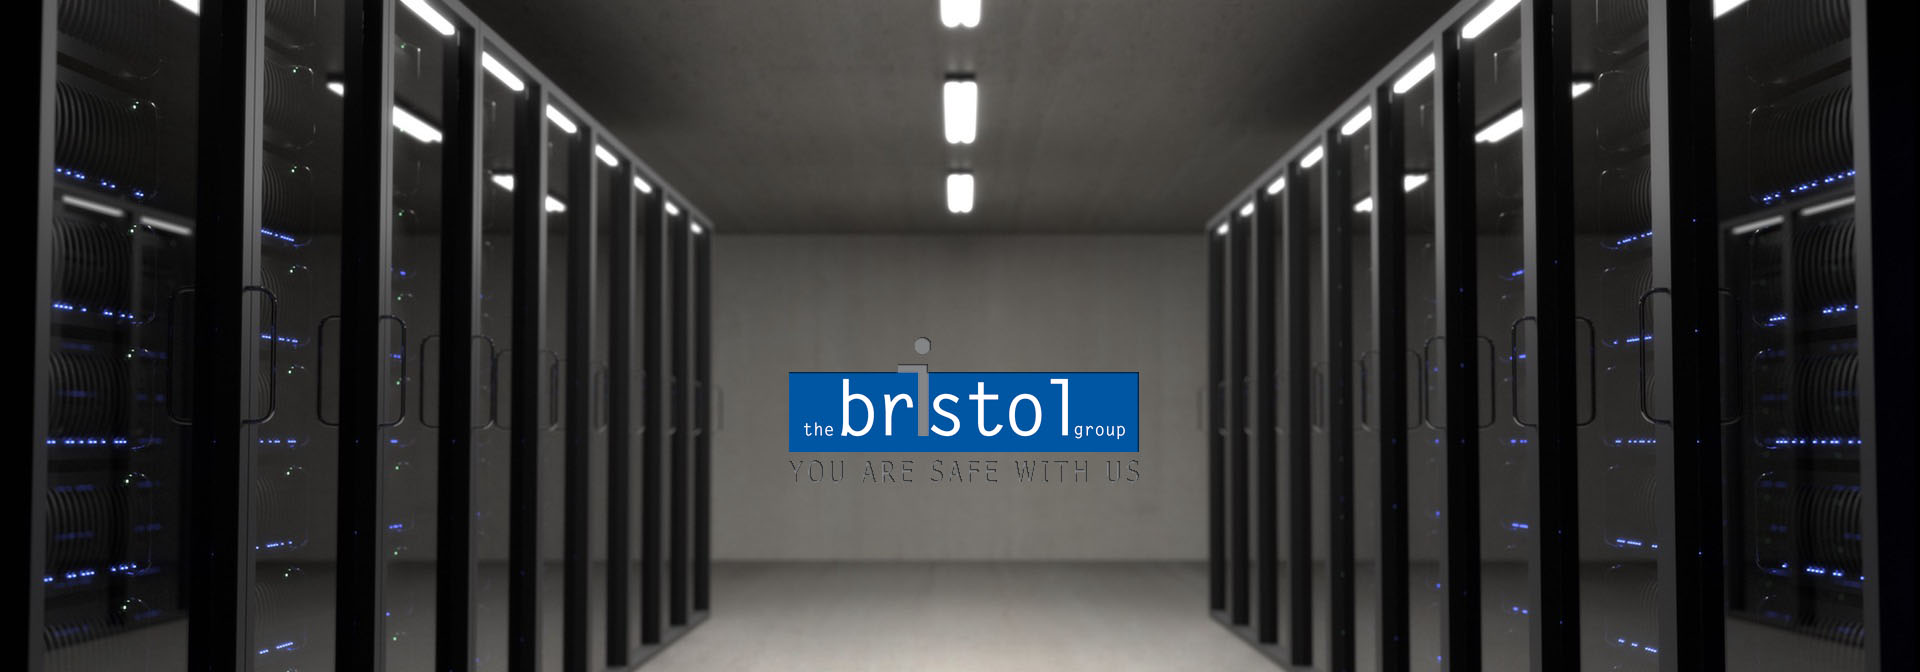 Bristol_Leistungen